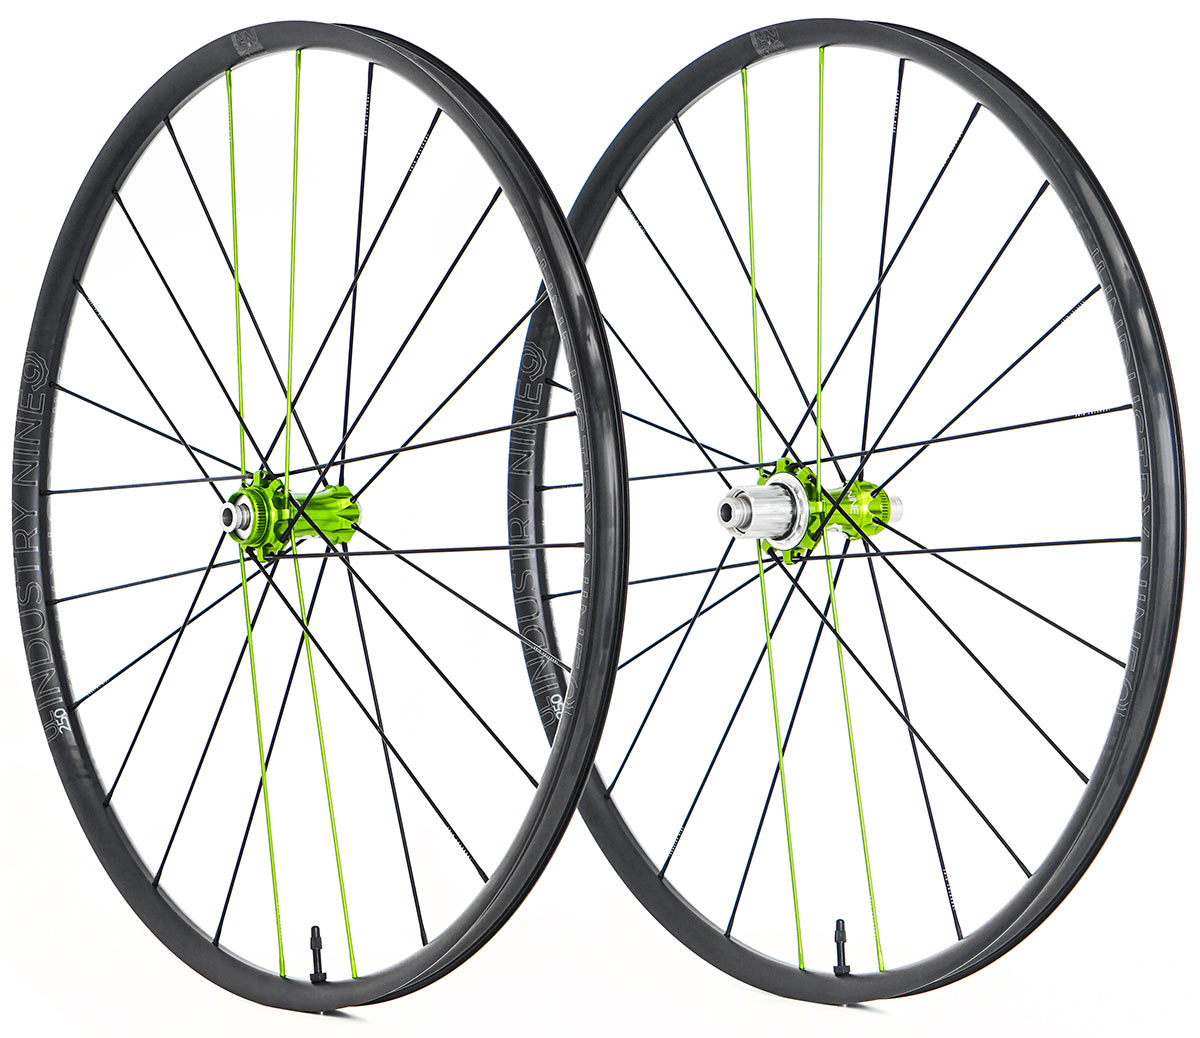 industry nine UL250 TRA lightweight gravel bike wheels